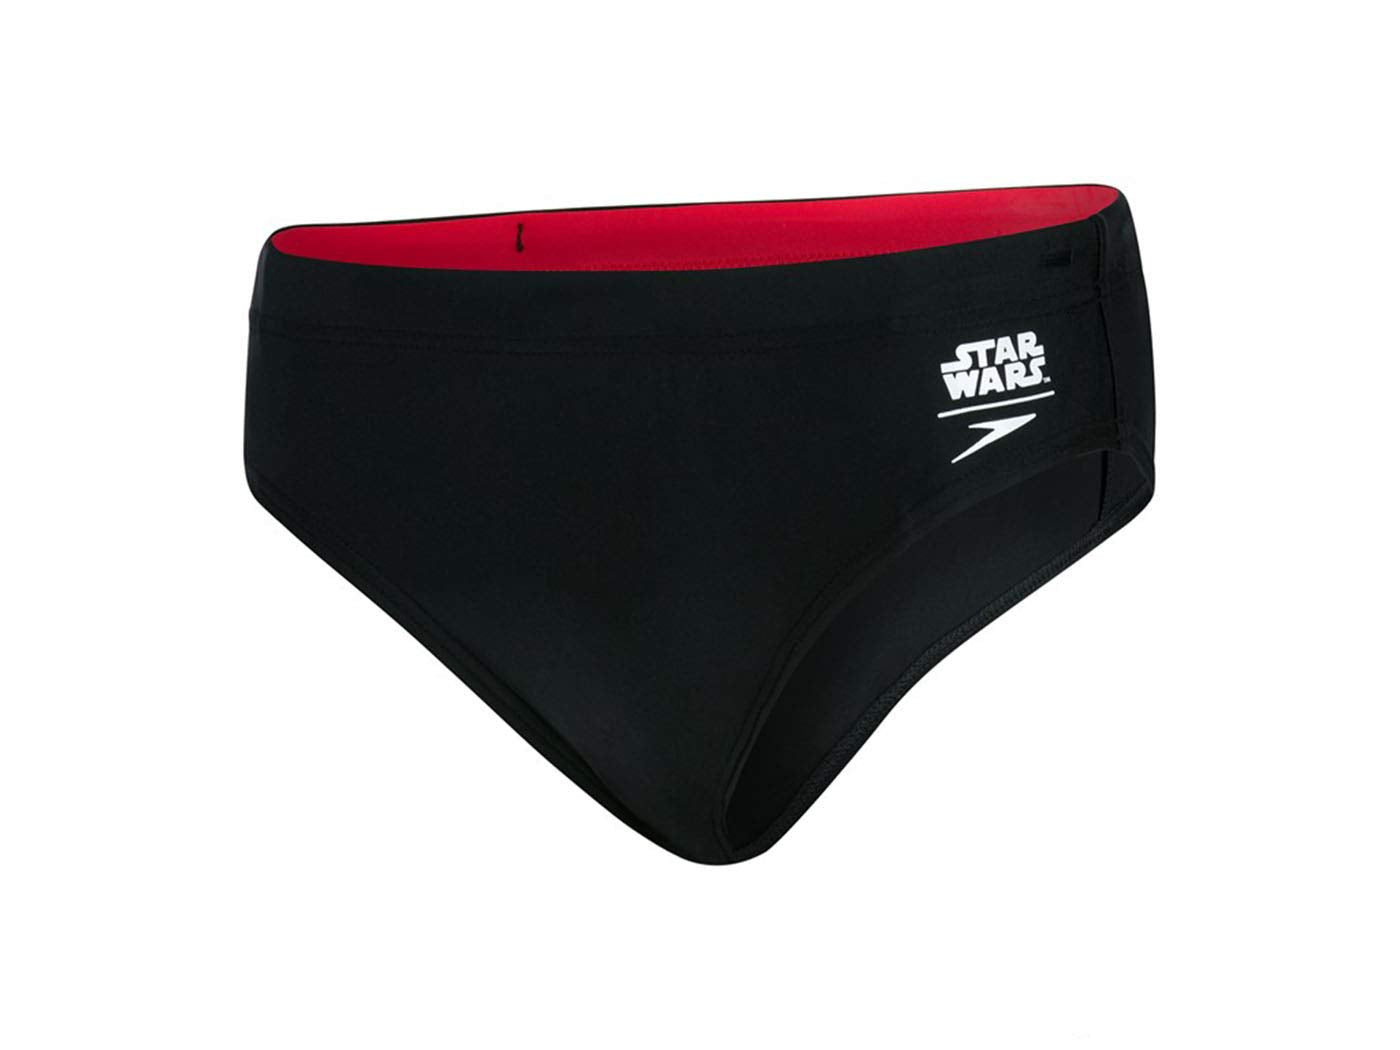 Speedo Star Wars Brief Trooper Logo Black For Boys - White - Risk Red - Best Price online Prokicksports.com